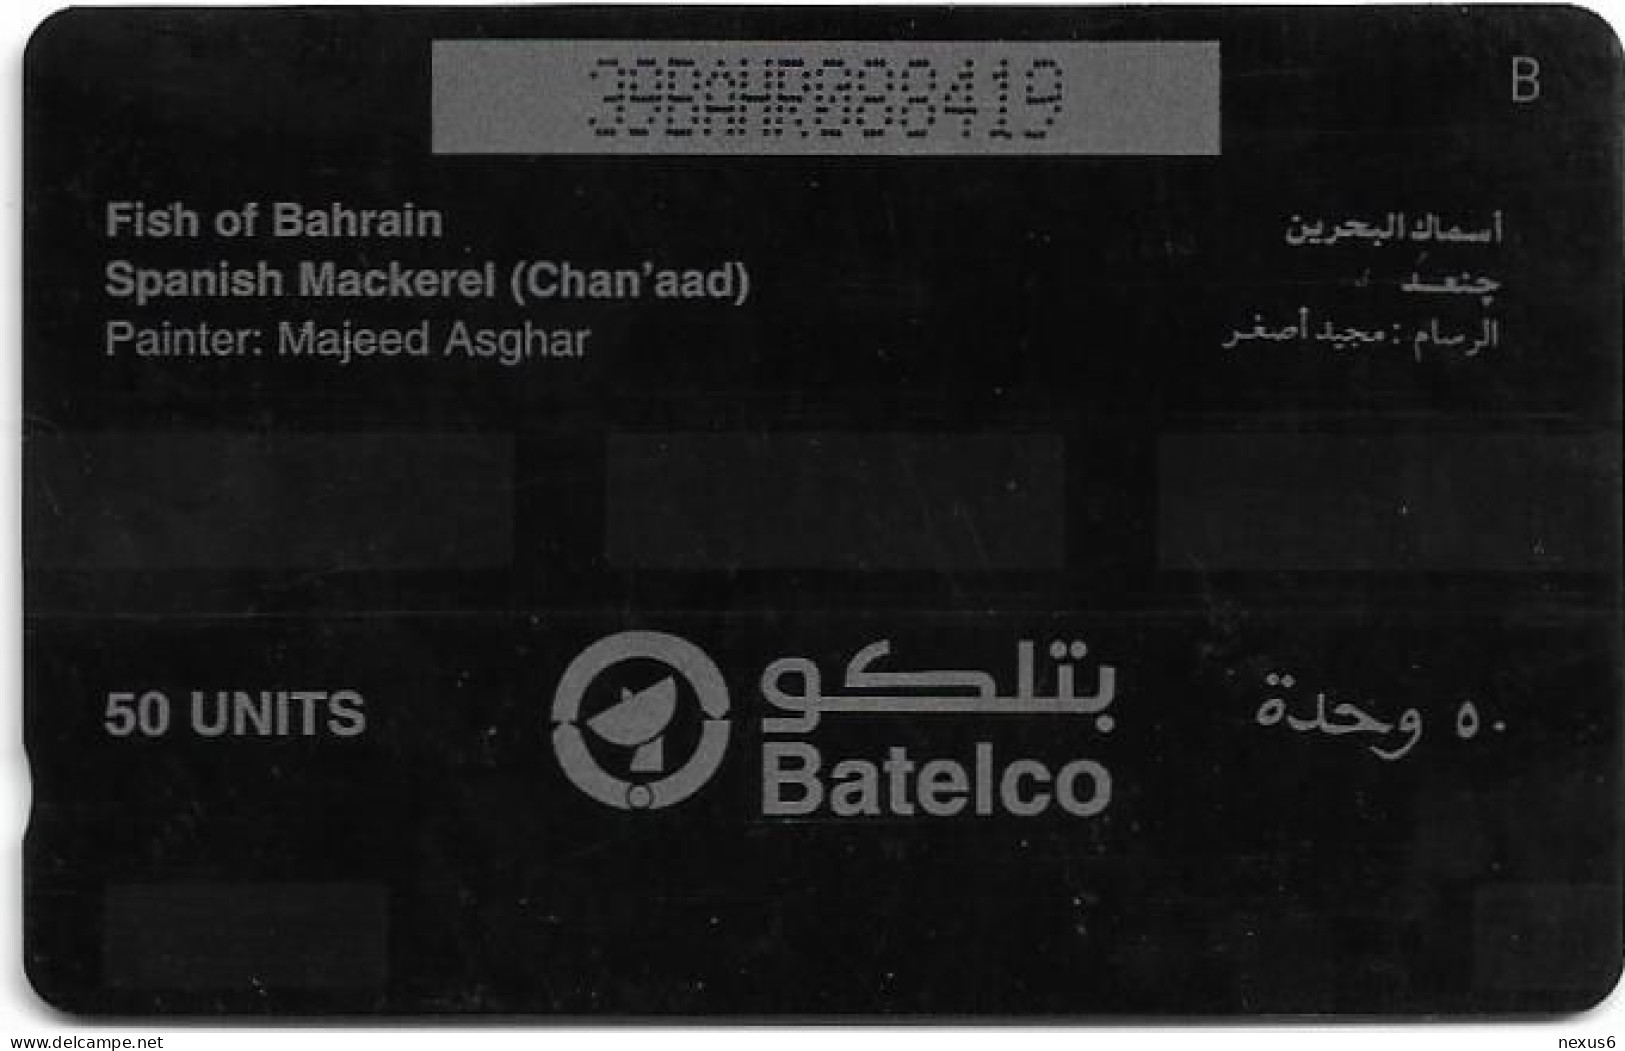 Bahrain - Batelco (GPT) - Fish Of Bahrain - Spanish Mackerel - 39BAHR (Dashed Ø), 1996, 50Units, Used - Bahrein